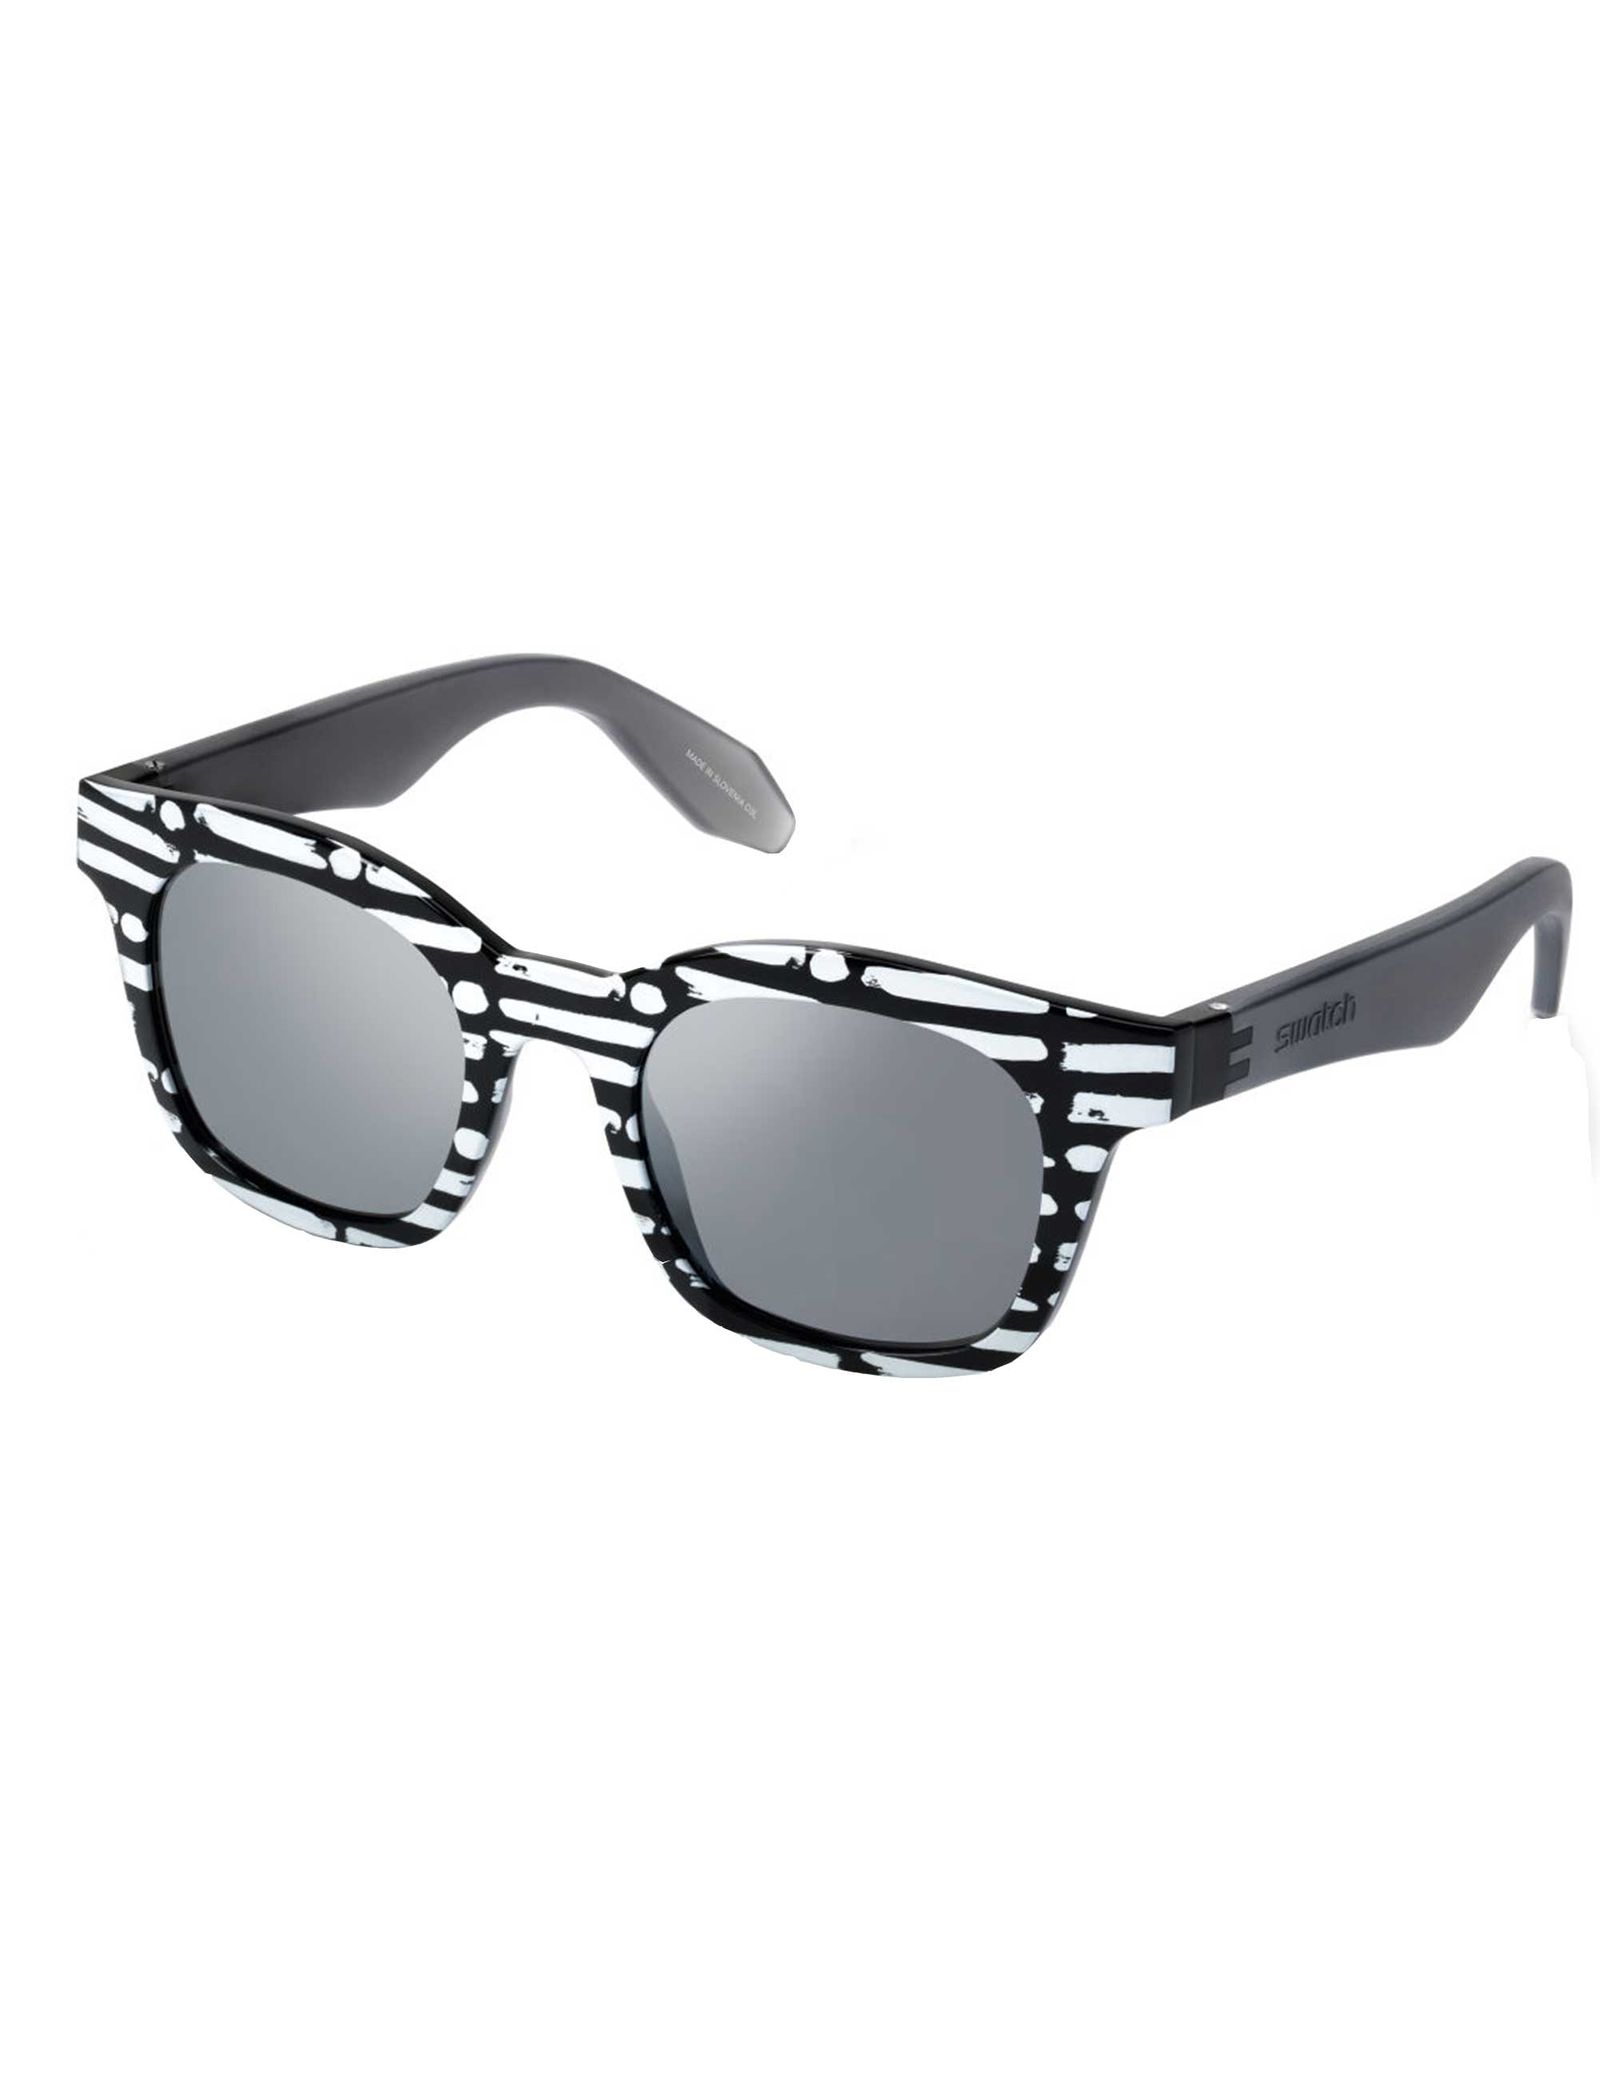 عینک آفتابی سواچ مدل SES02SPB015 - سفید مشکی - 3